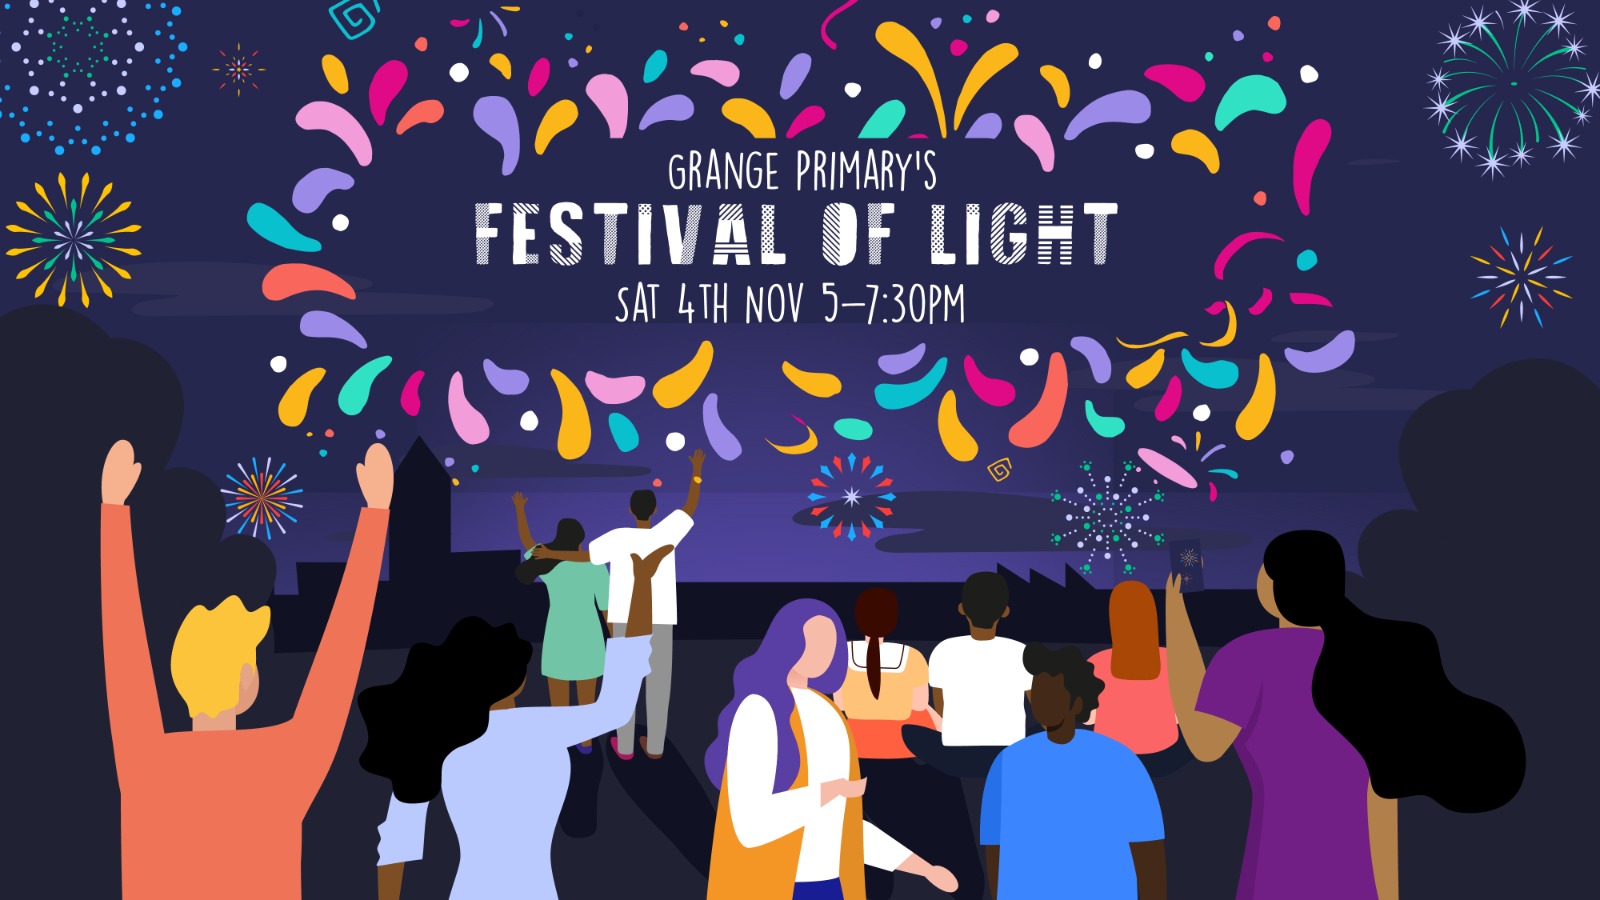 Festival of Light poster